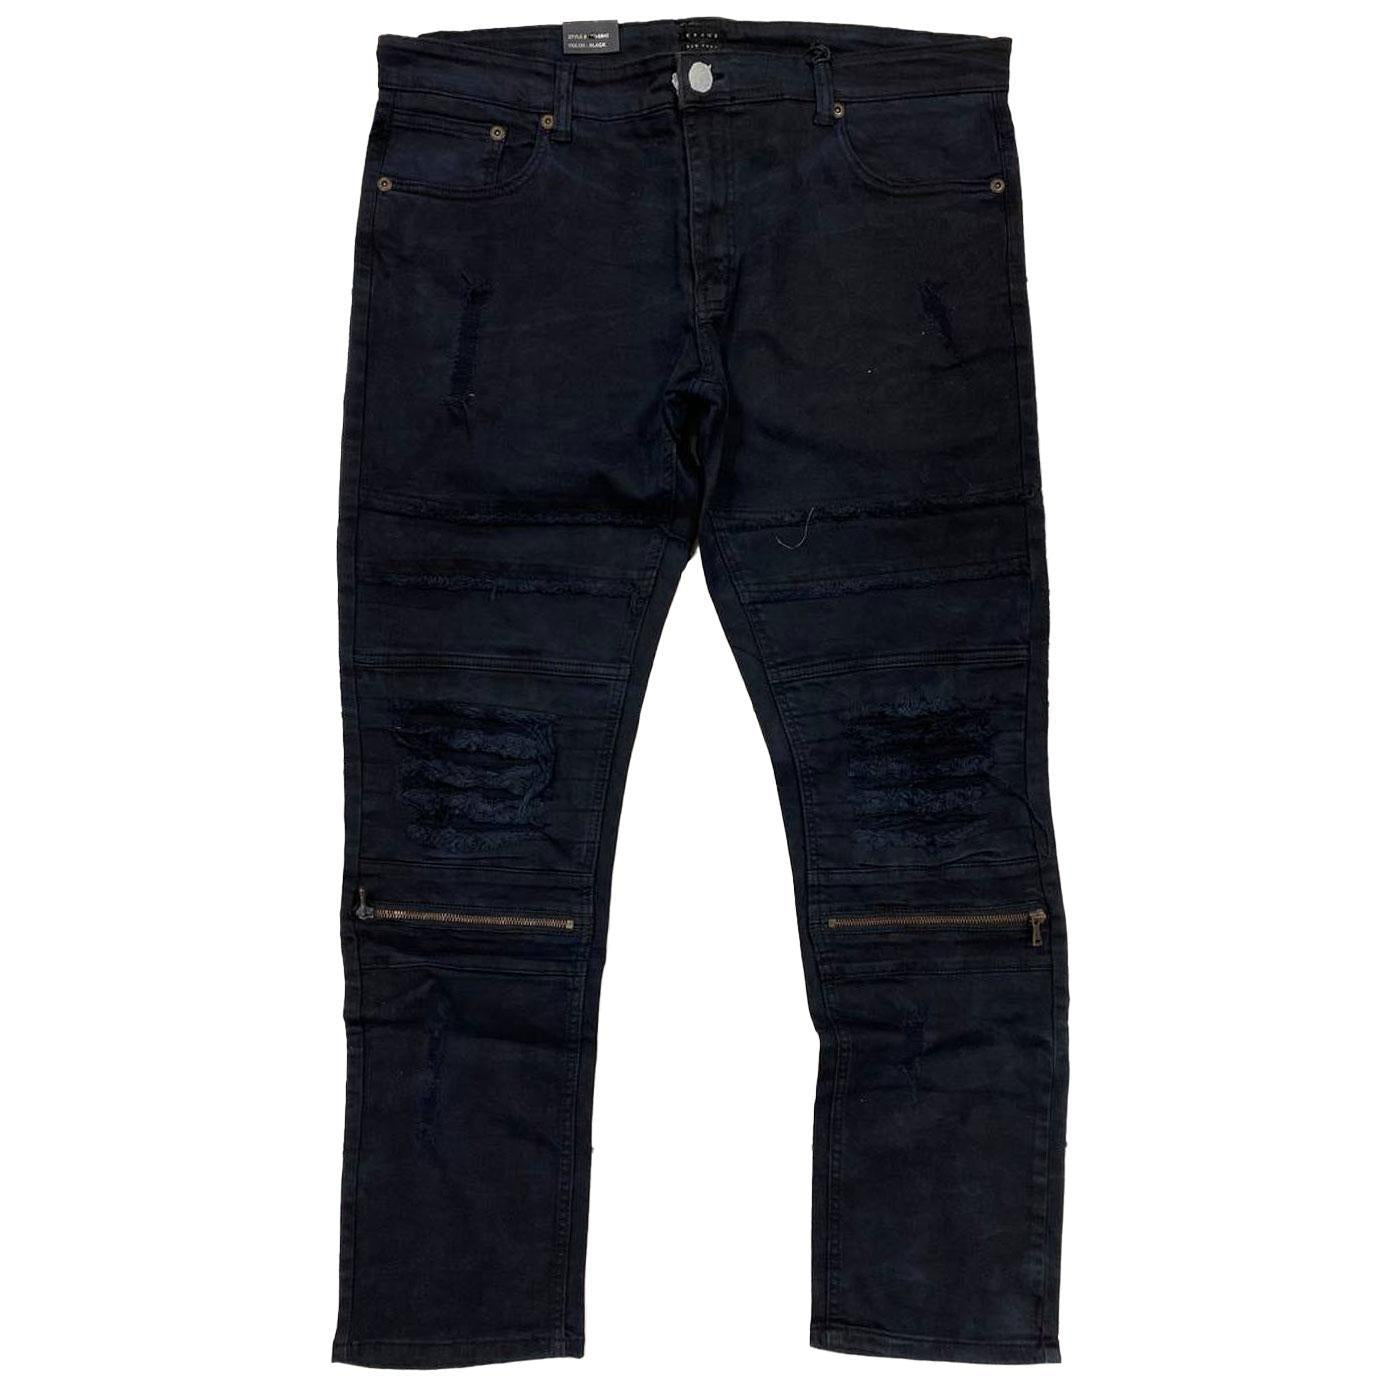 Zara Mens skinny jeans black faded size 34 | eBay